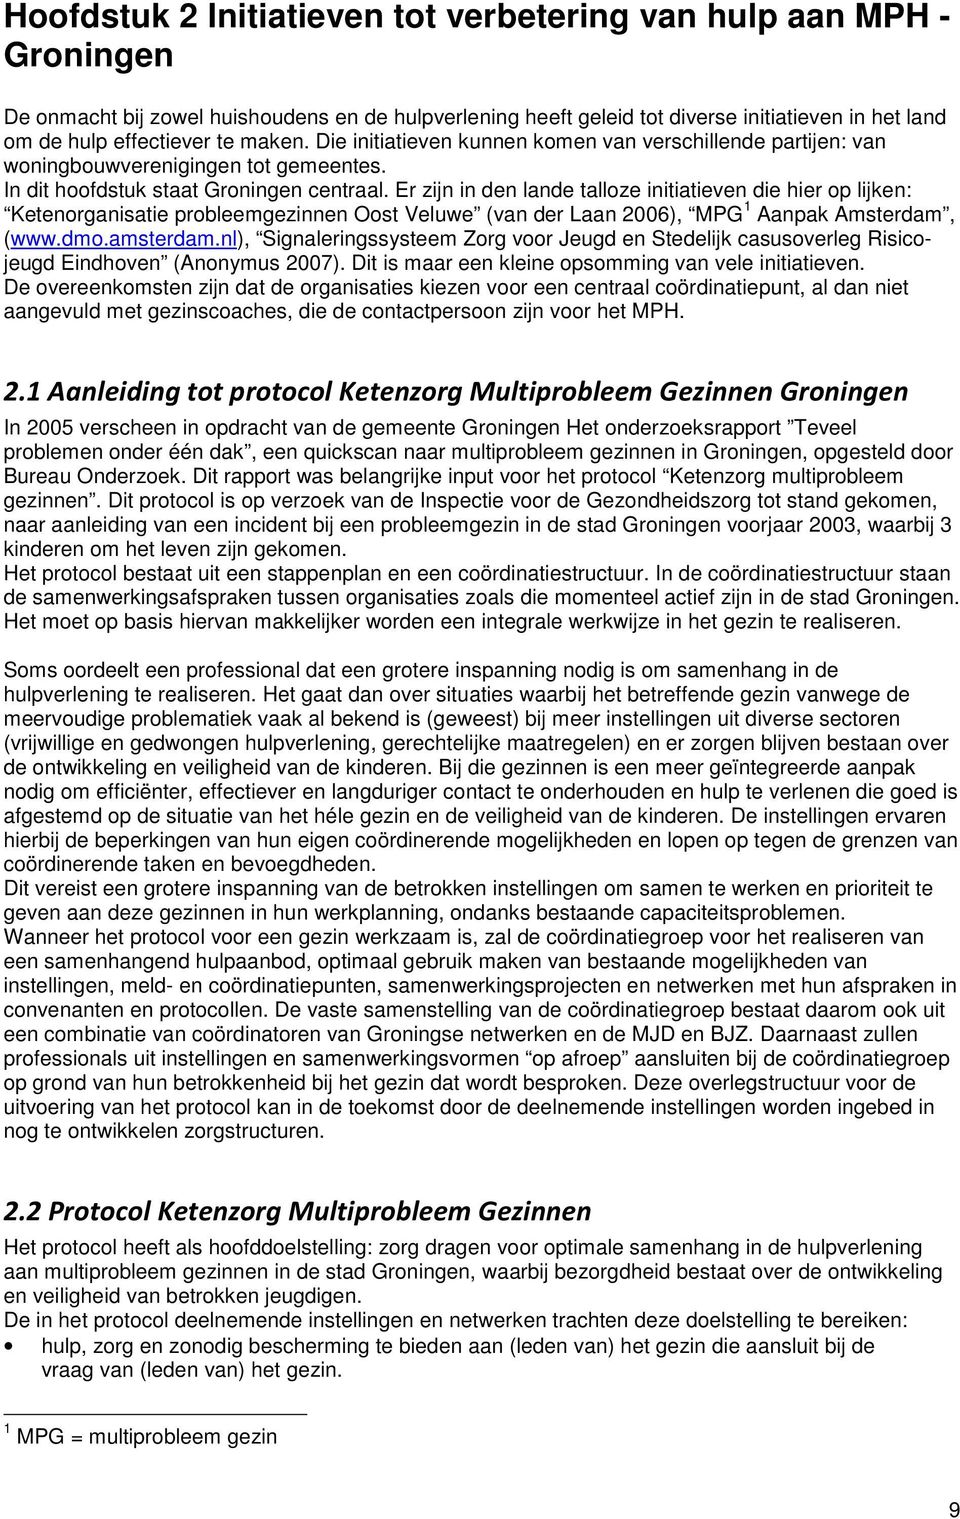 Er zijn in den lande talloze initiatieven die hier op lijken: Ketenorganisatie probleemgezinnen Oost Veluwe (van der Laan 2006), MPG 1 Aanpak Amsterdam, (www.dmo.amsterdam.